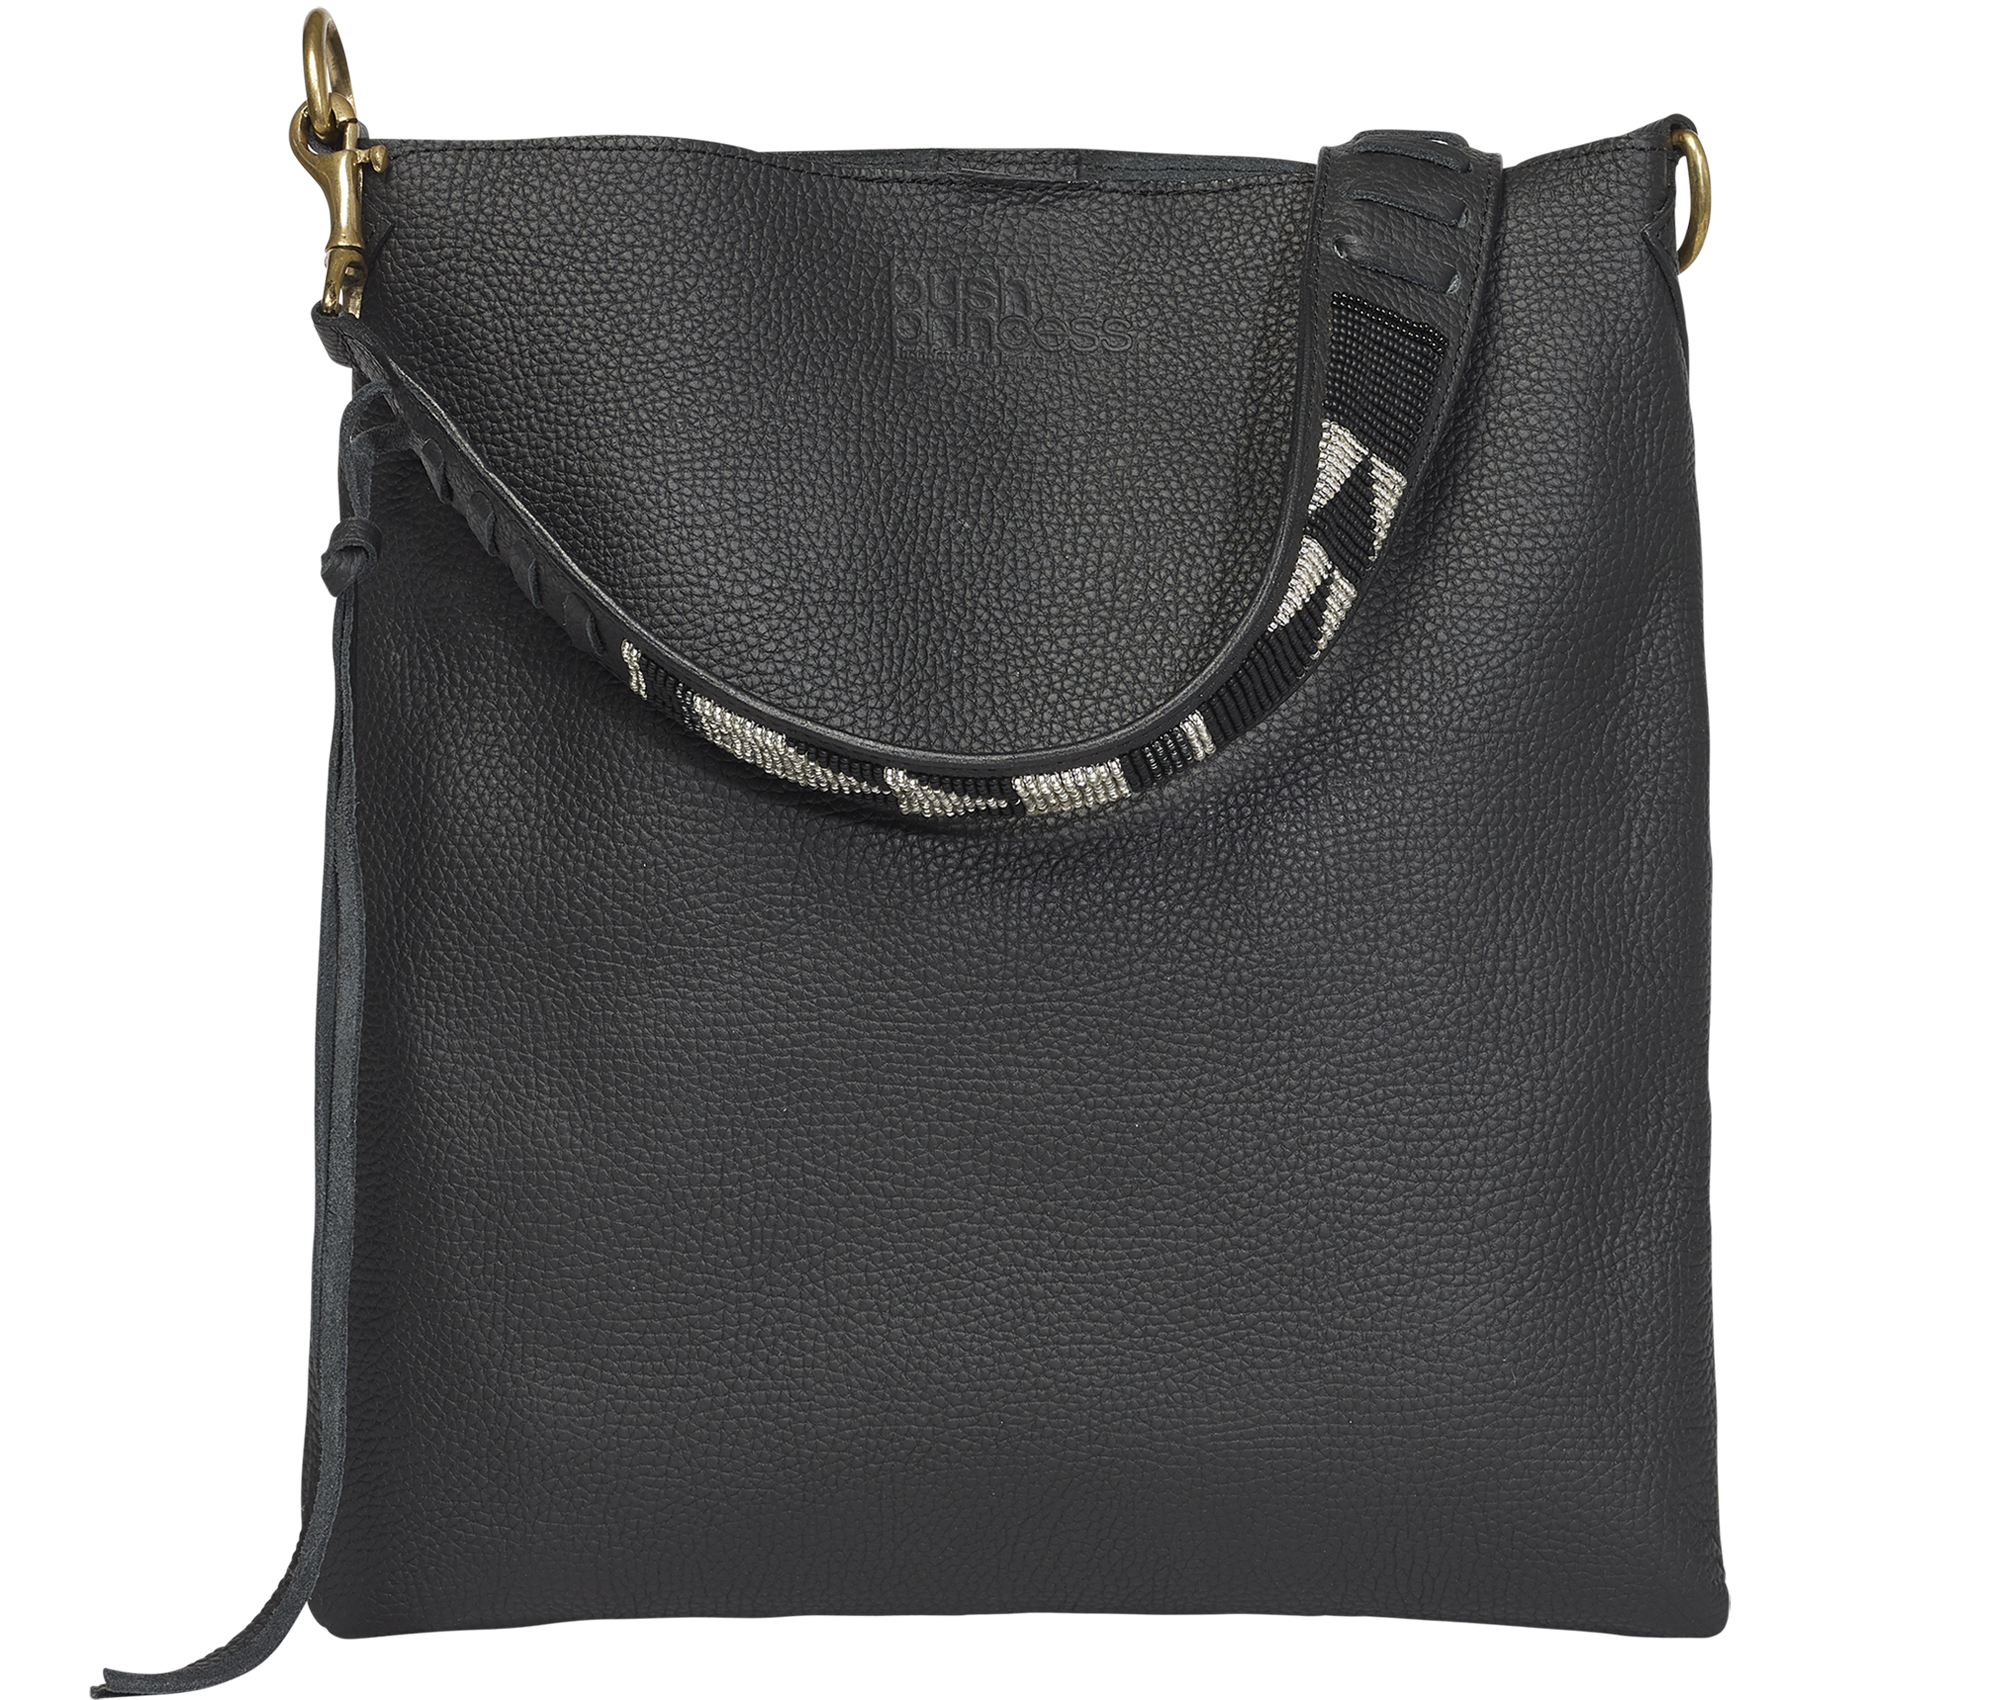 Handbag Black Beaded Strap Shoulder Bag